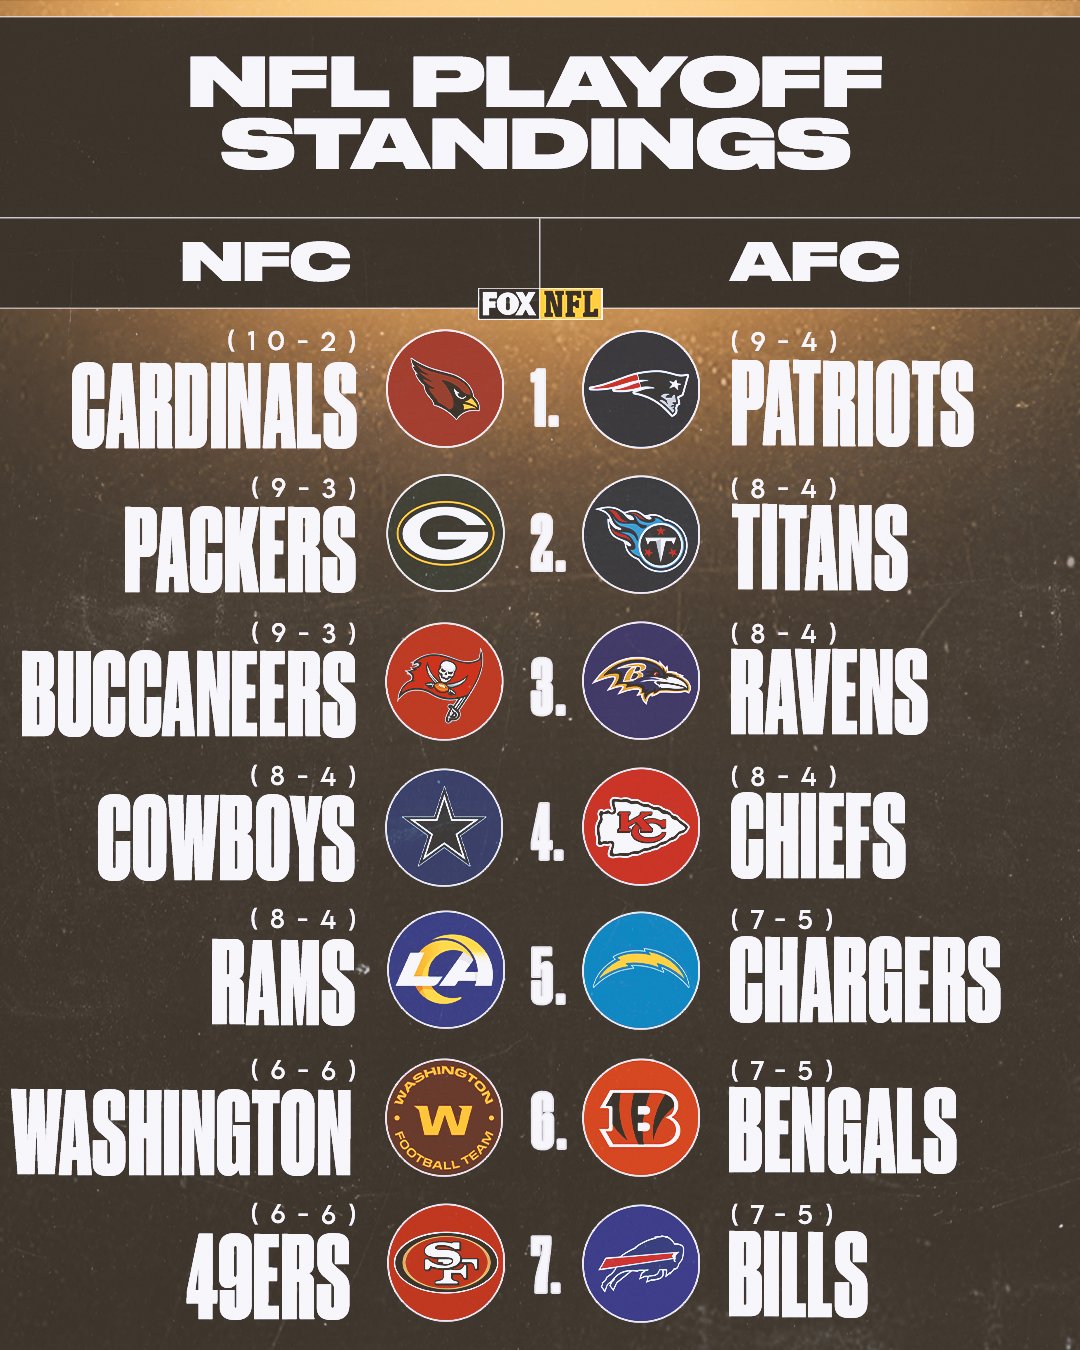 NFL Standings & NFL Playoff Seedings